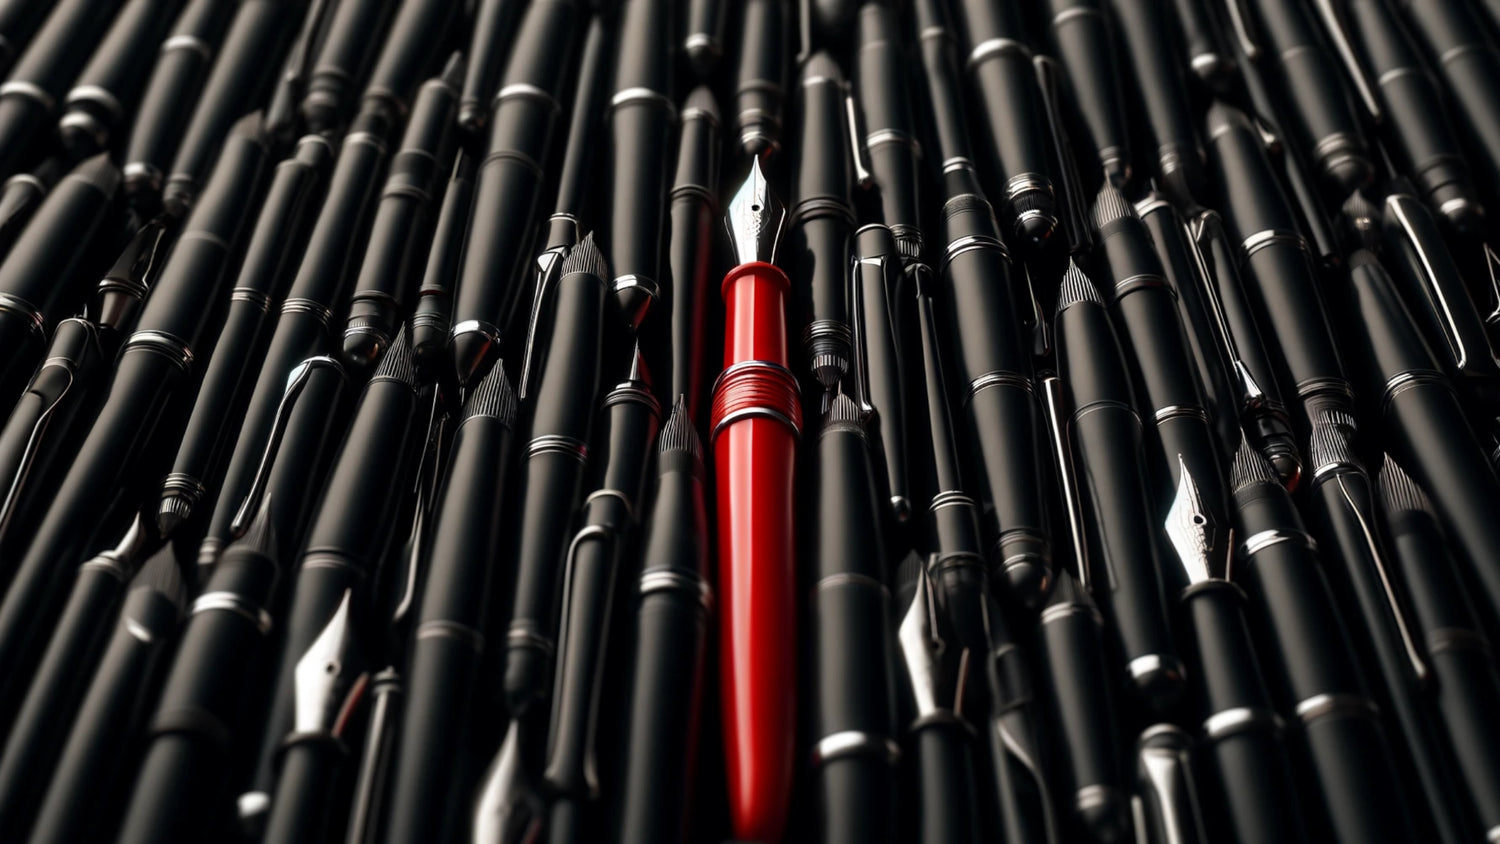 Unique Pens by Pitchman Pens